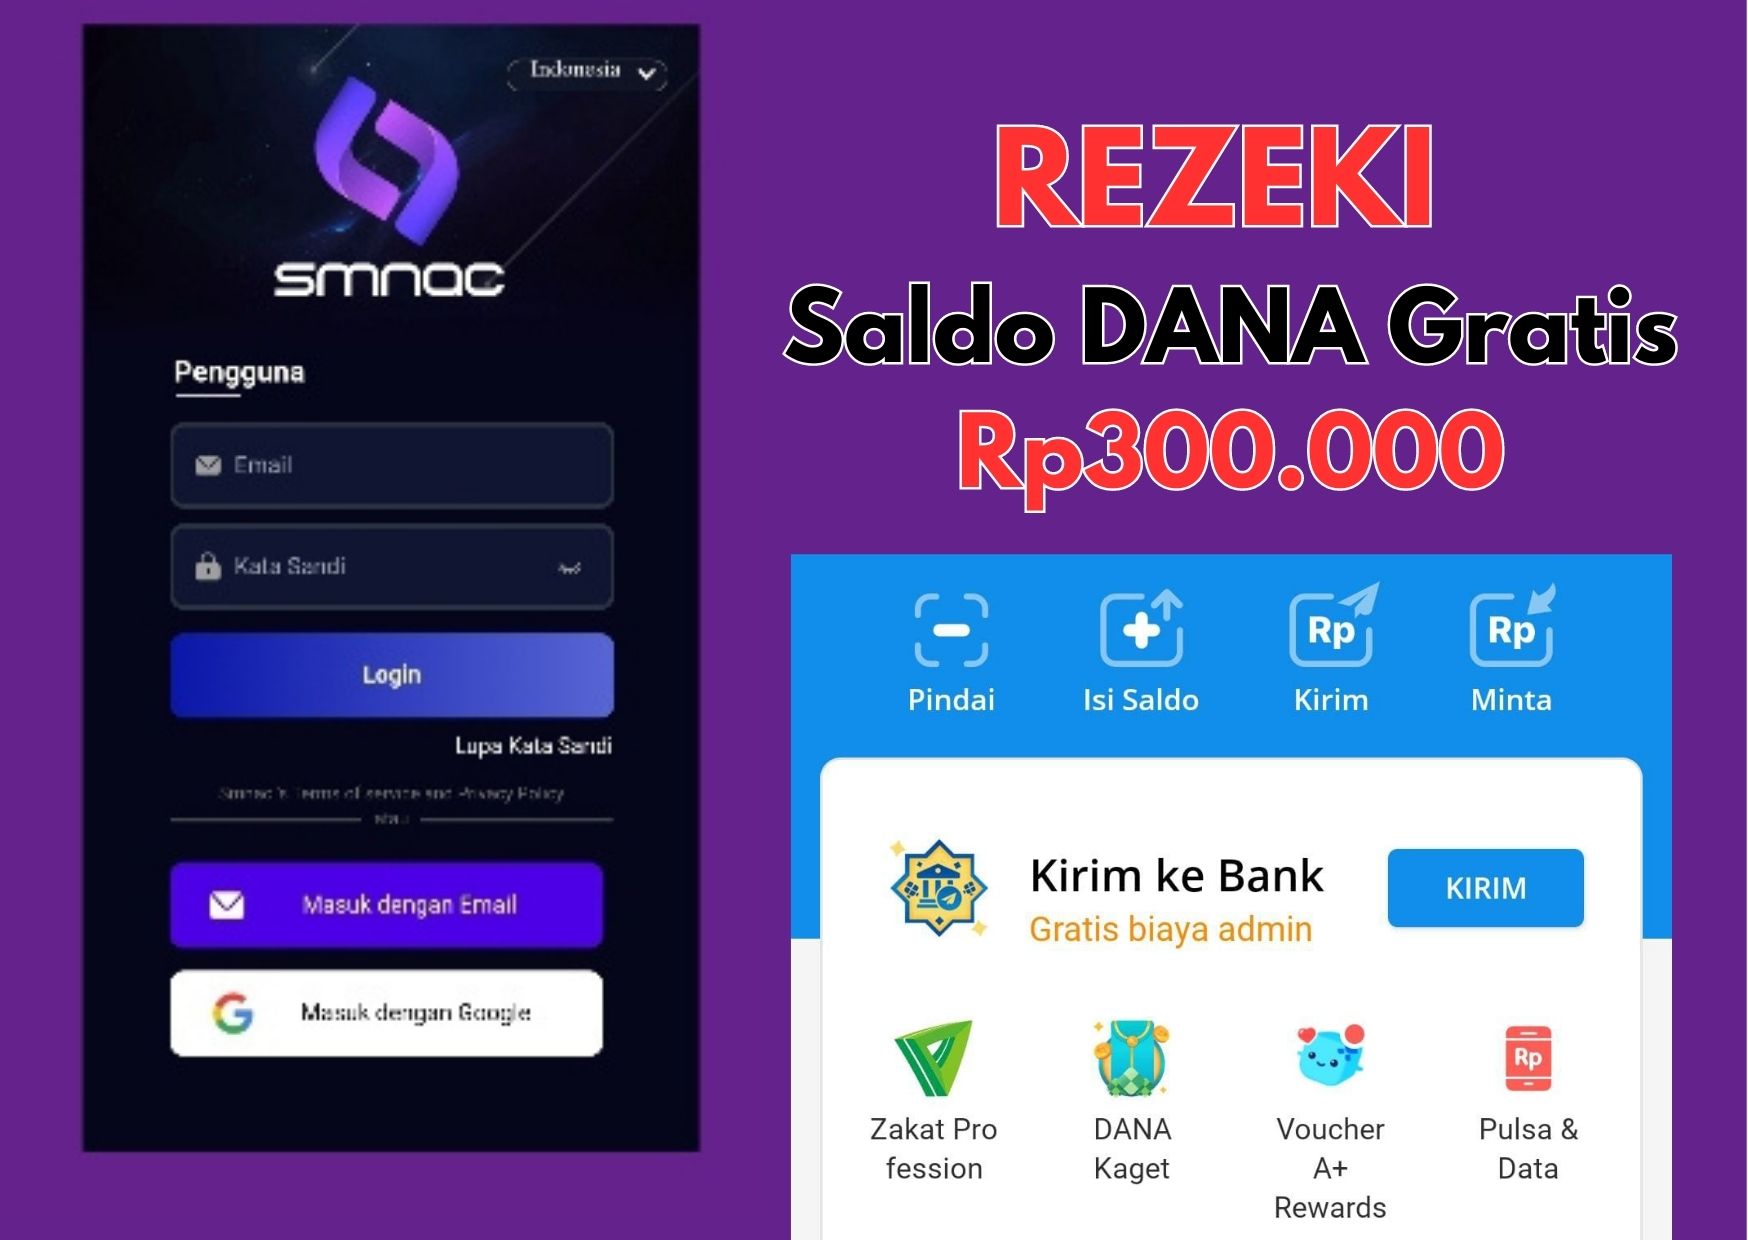 Tambah Rezeki! Dapatkan Saldo DANA Gratis Rp300.000 dari Aplikasi SMNAC 